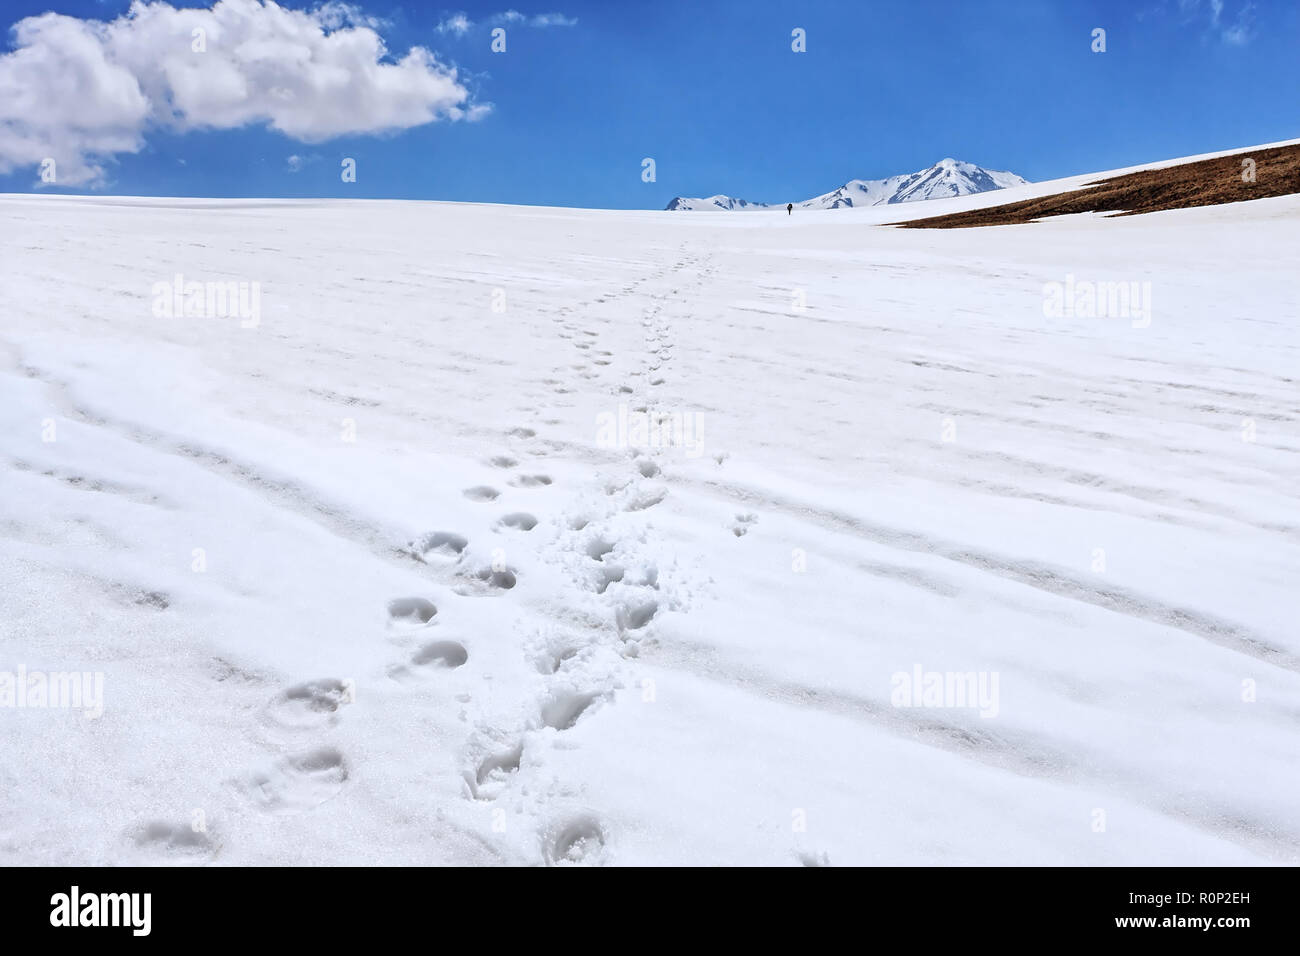 La disparition des empreintes en neige sous ciel bleu avec tourisme horizon. Dans les hautes terres d'hiver Lagonaki montagnes du Caucase. Paysage Pittoresque. Banque D'Images